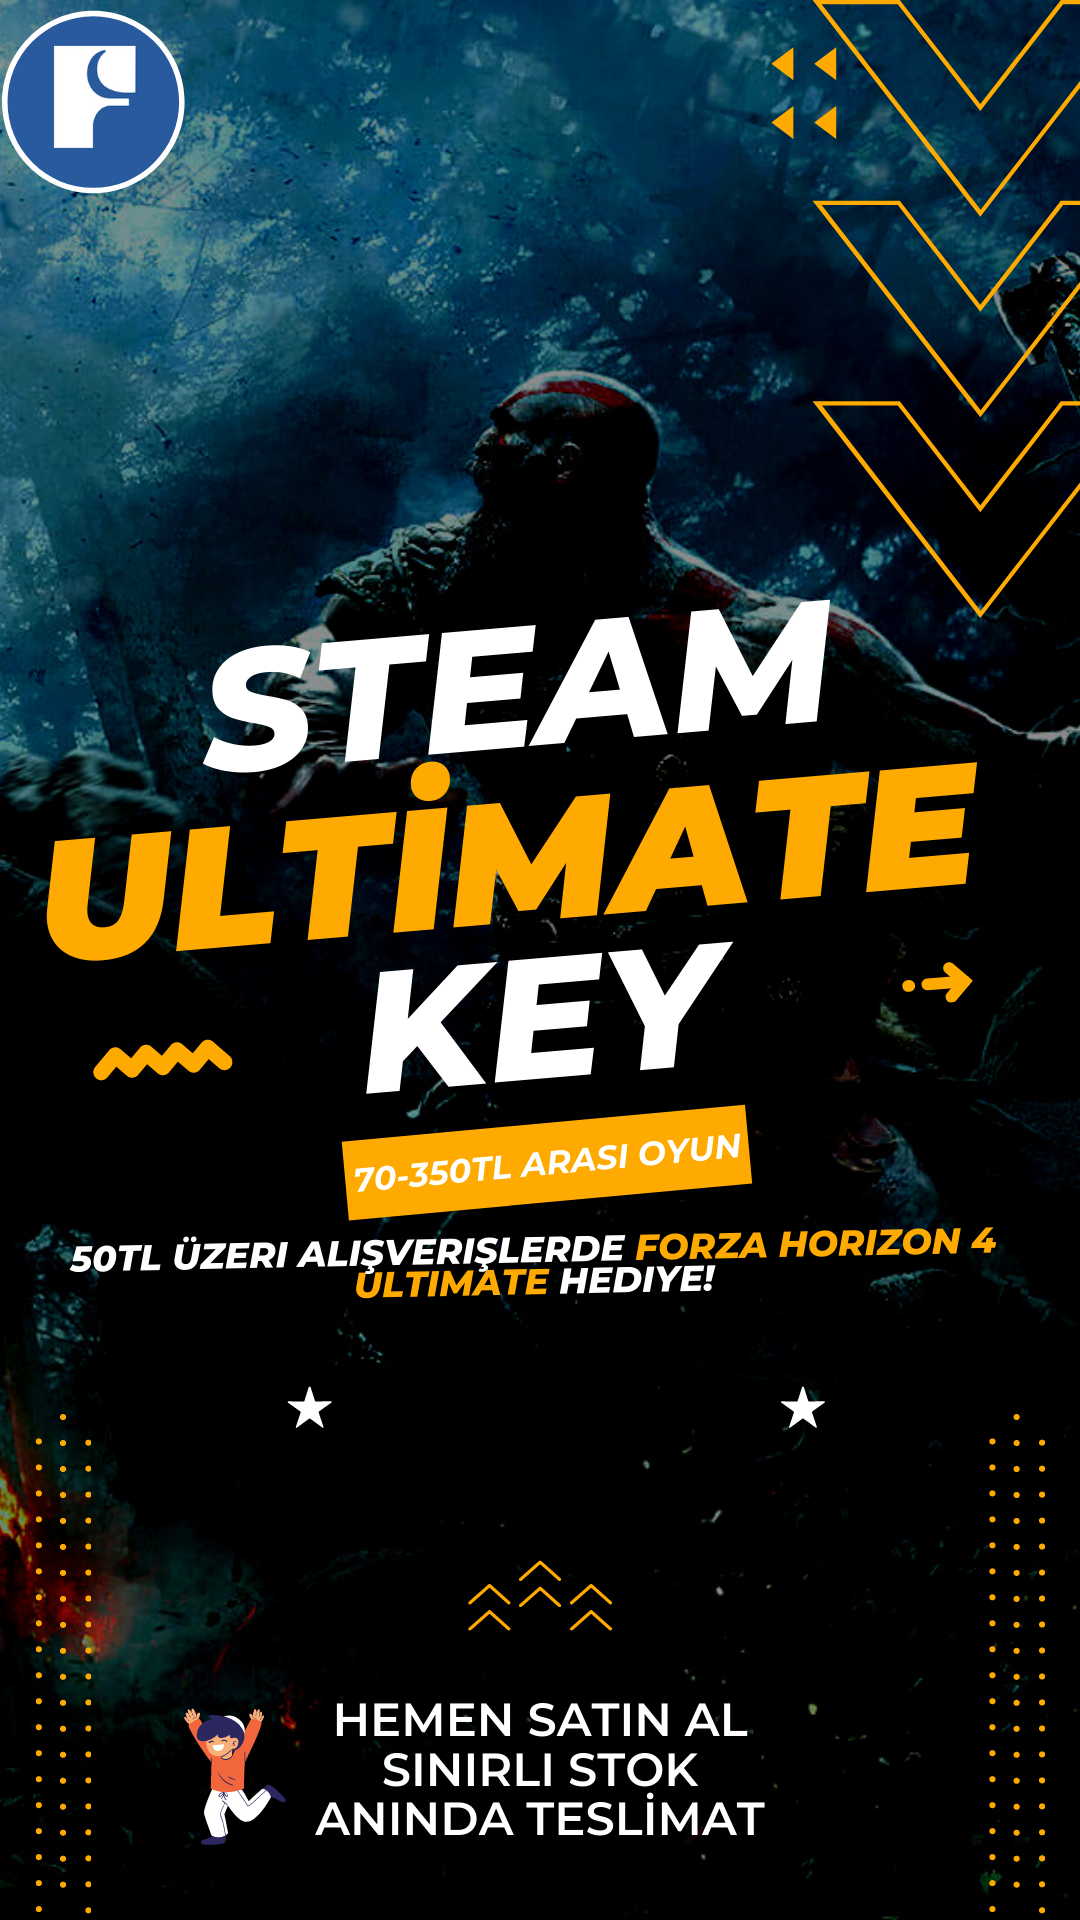 Steam Ultimate Steam Key & 70-350TL OYUN